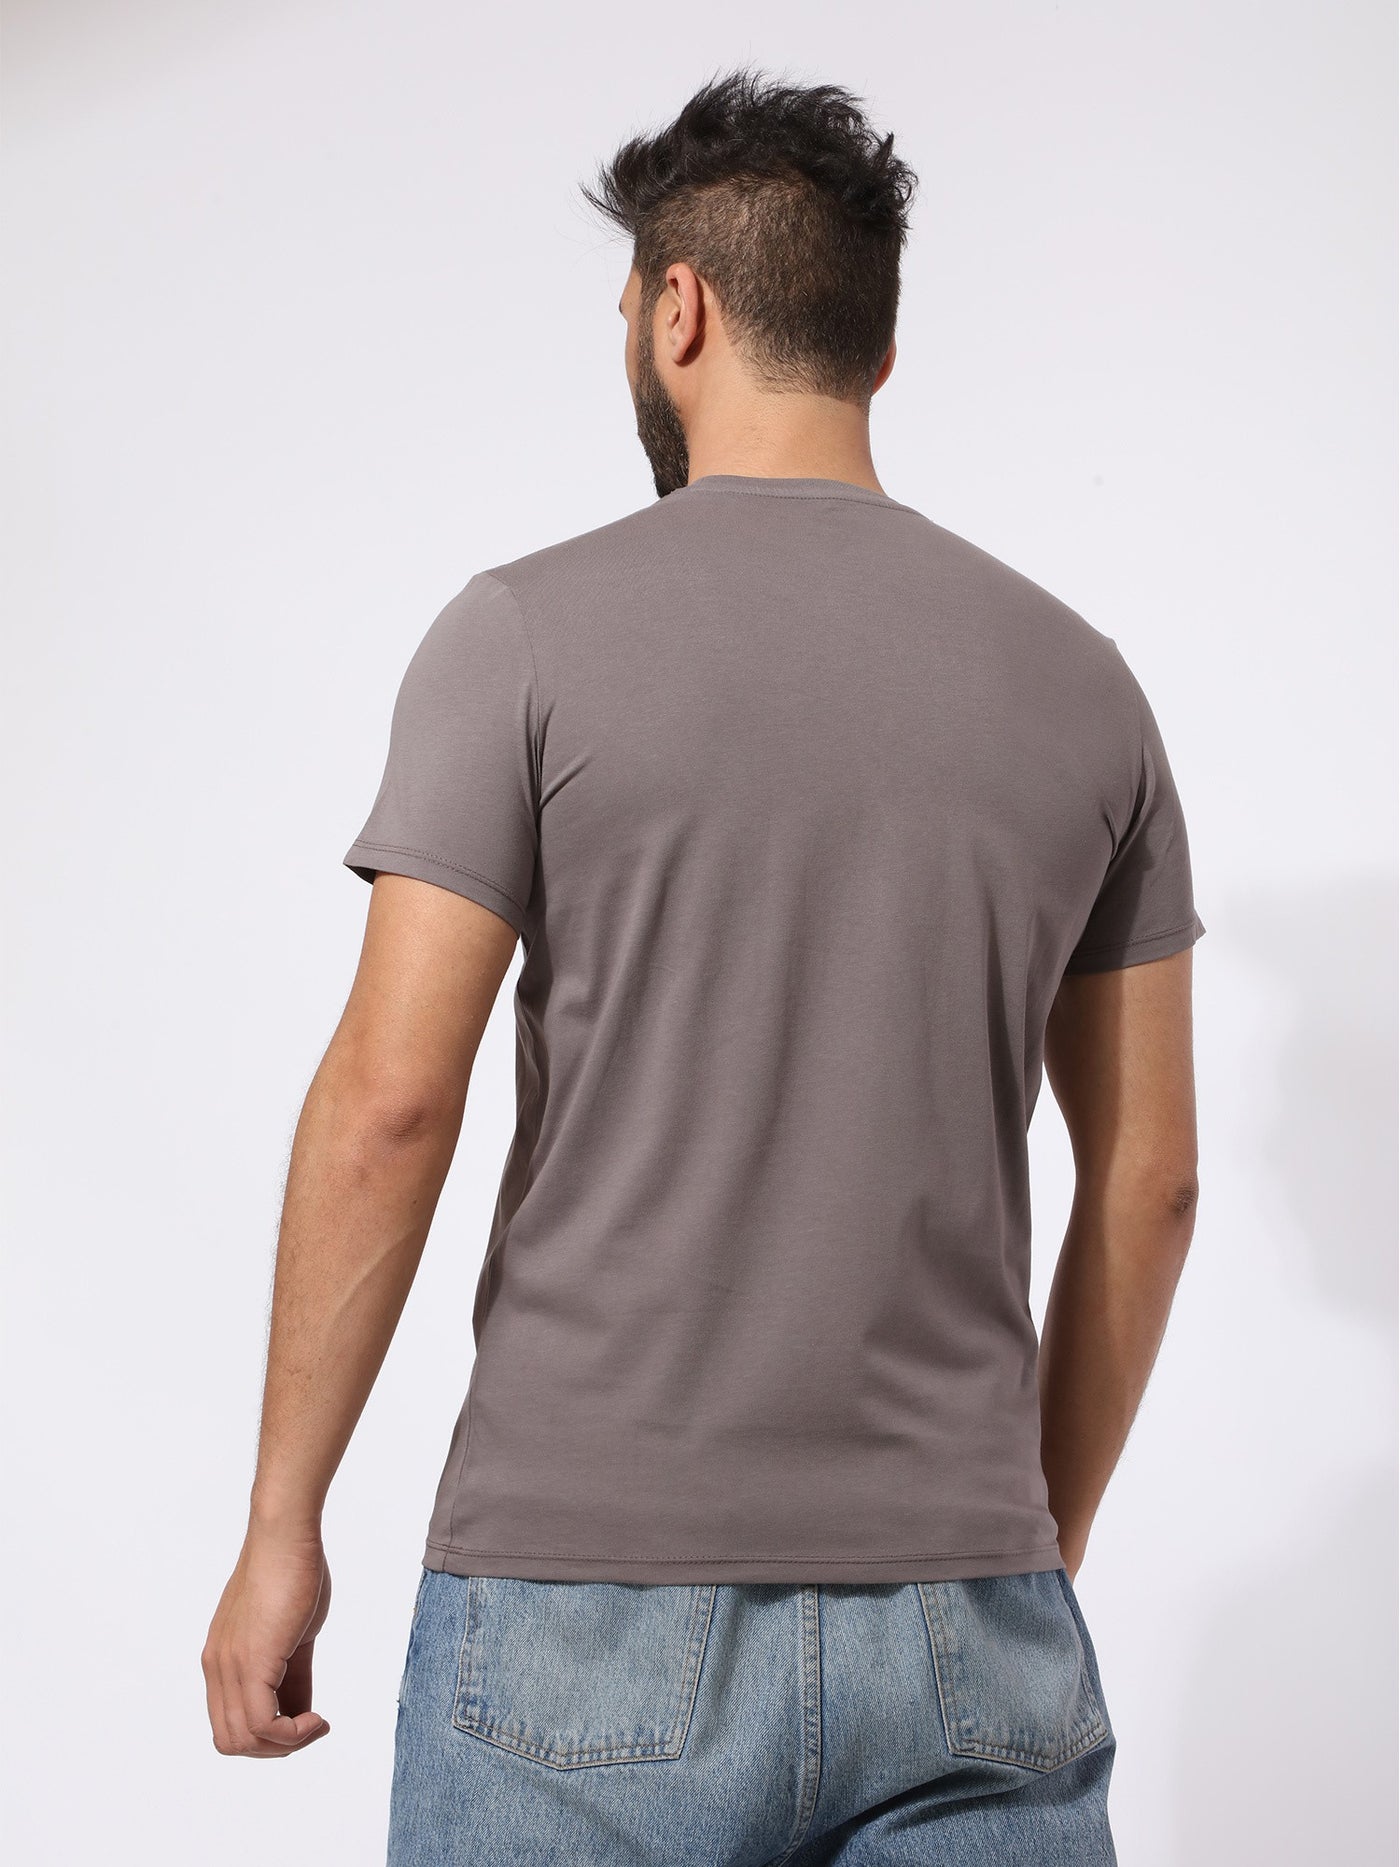 T-Shirt - Printed - Regular fit